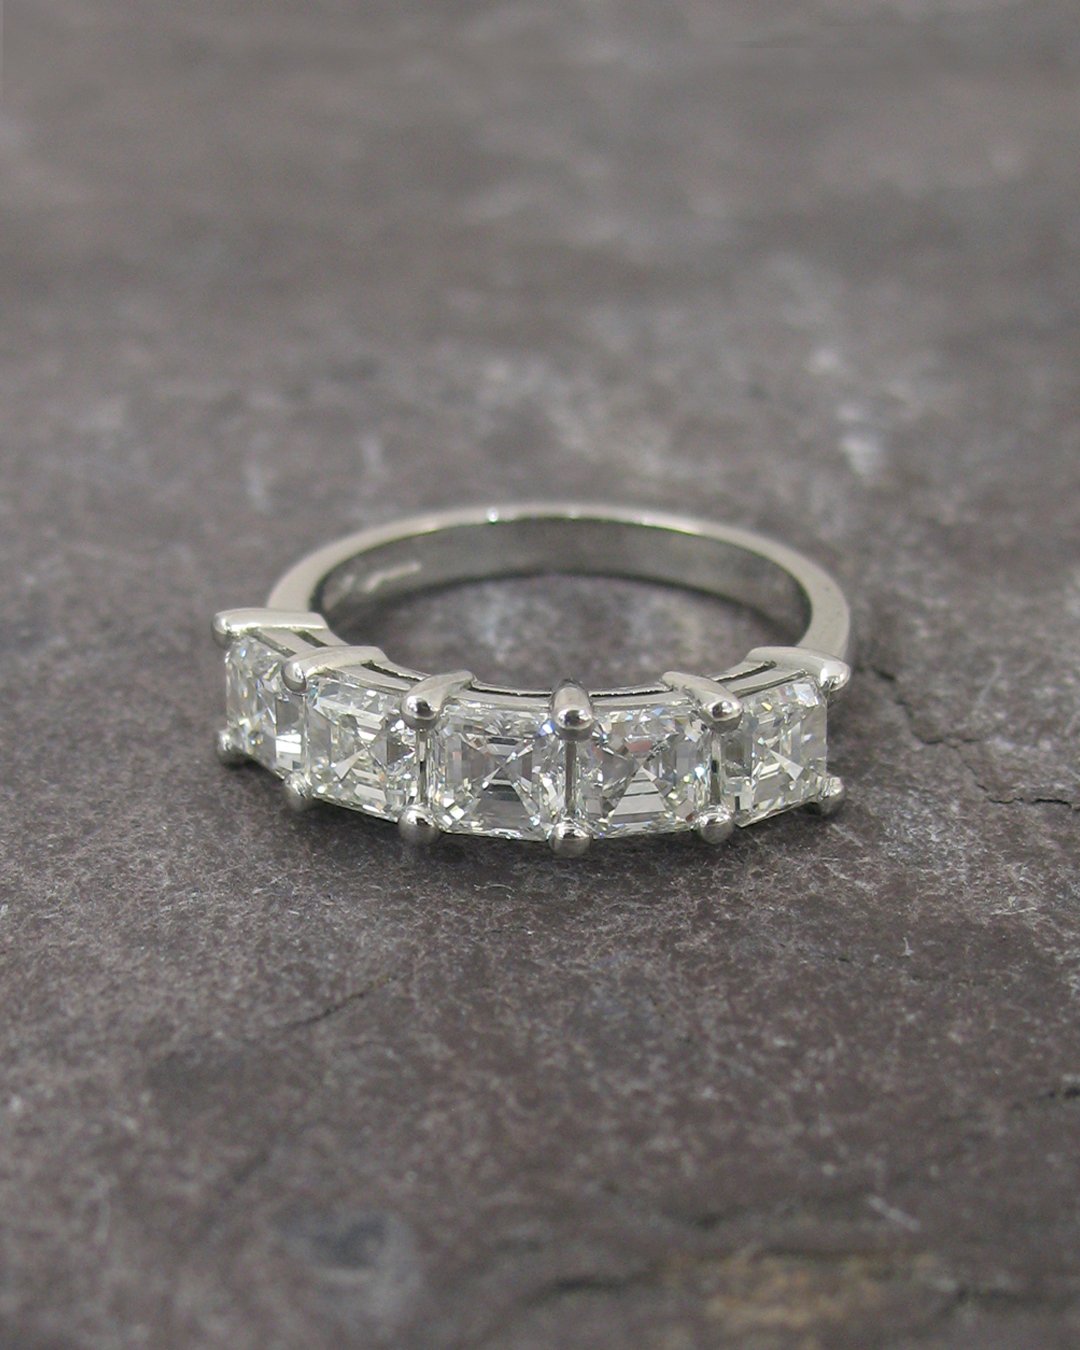 A five stone asscher cut diamond engagement ring